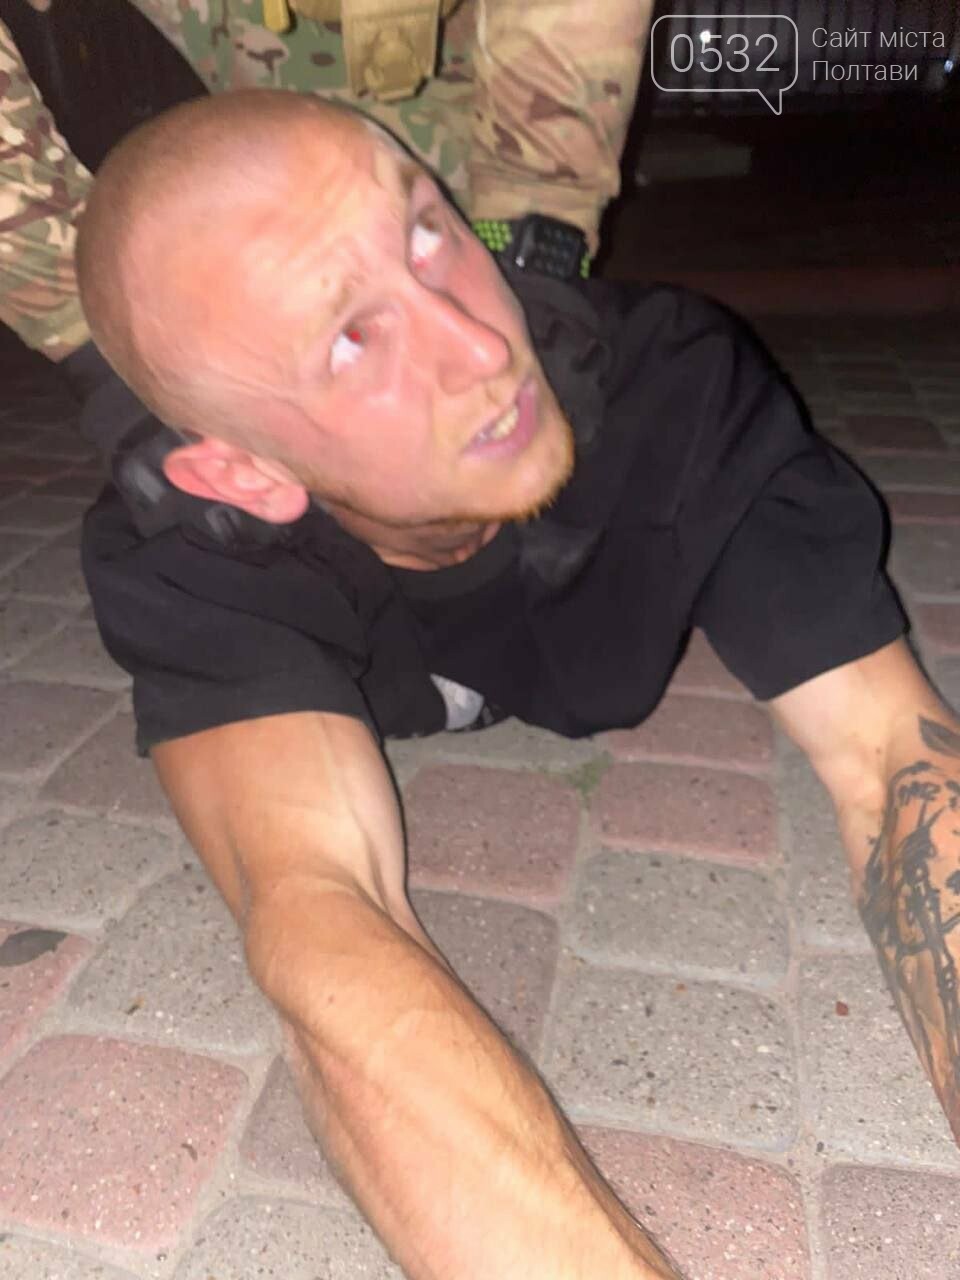 Полтавського інстаграм-блогера, який плював у військових та намагався їх принизити, затримали поліція та СБУ